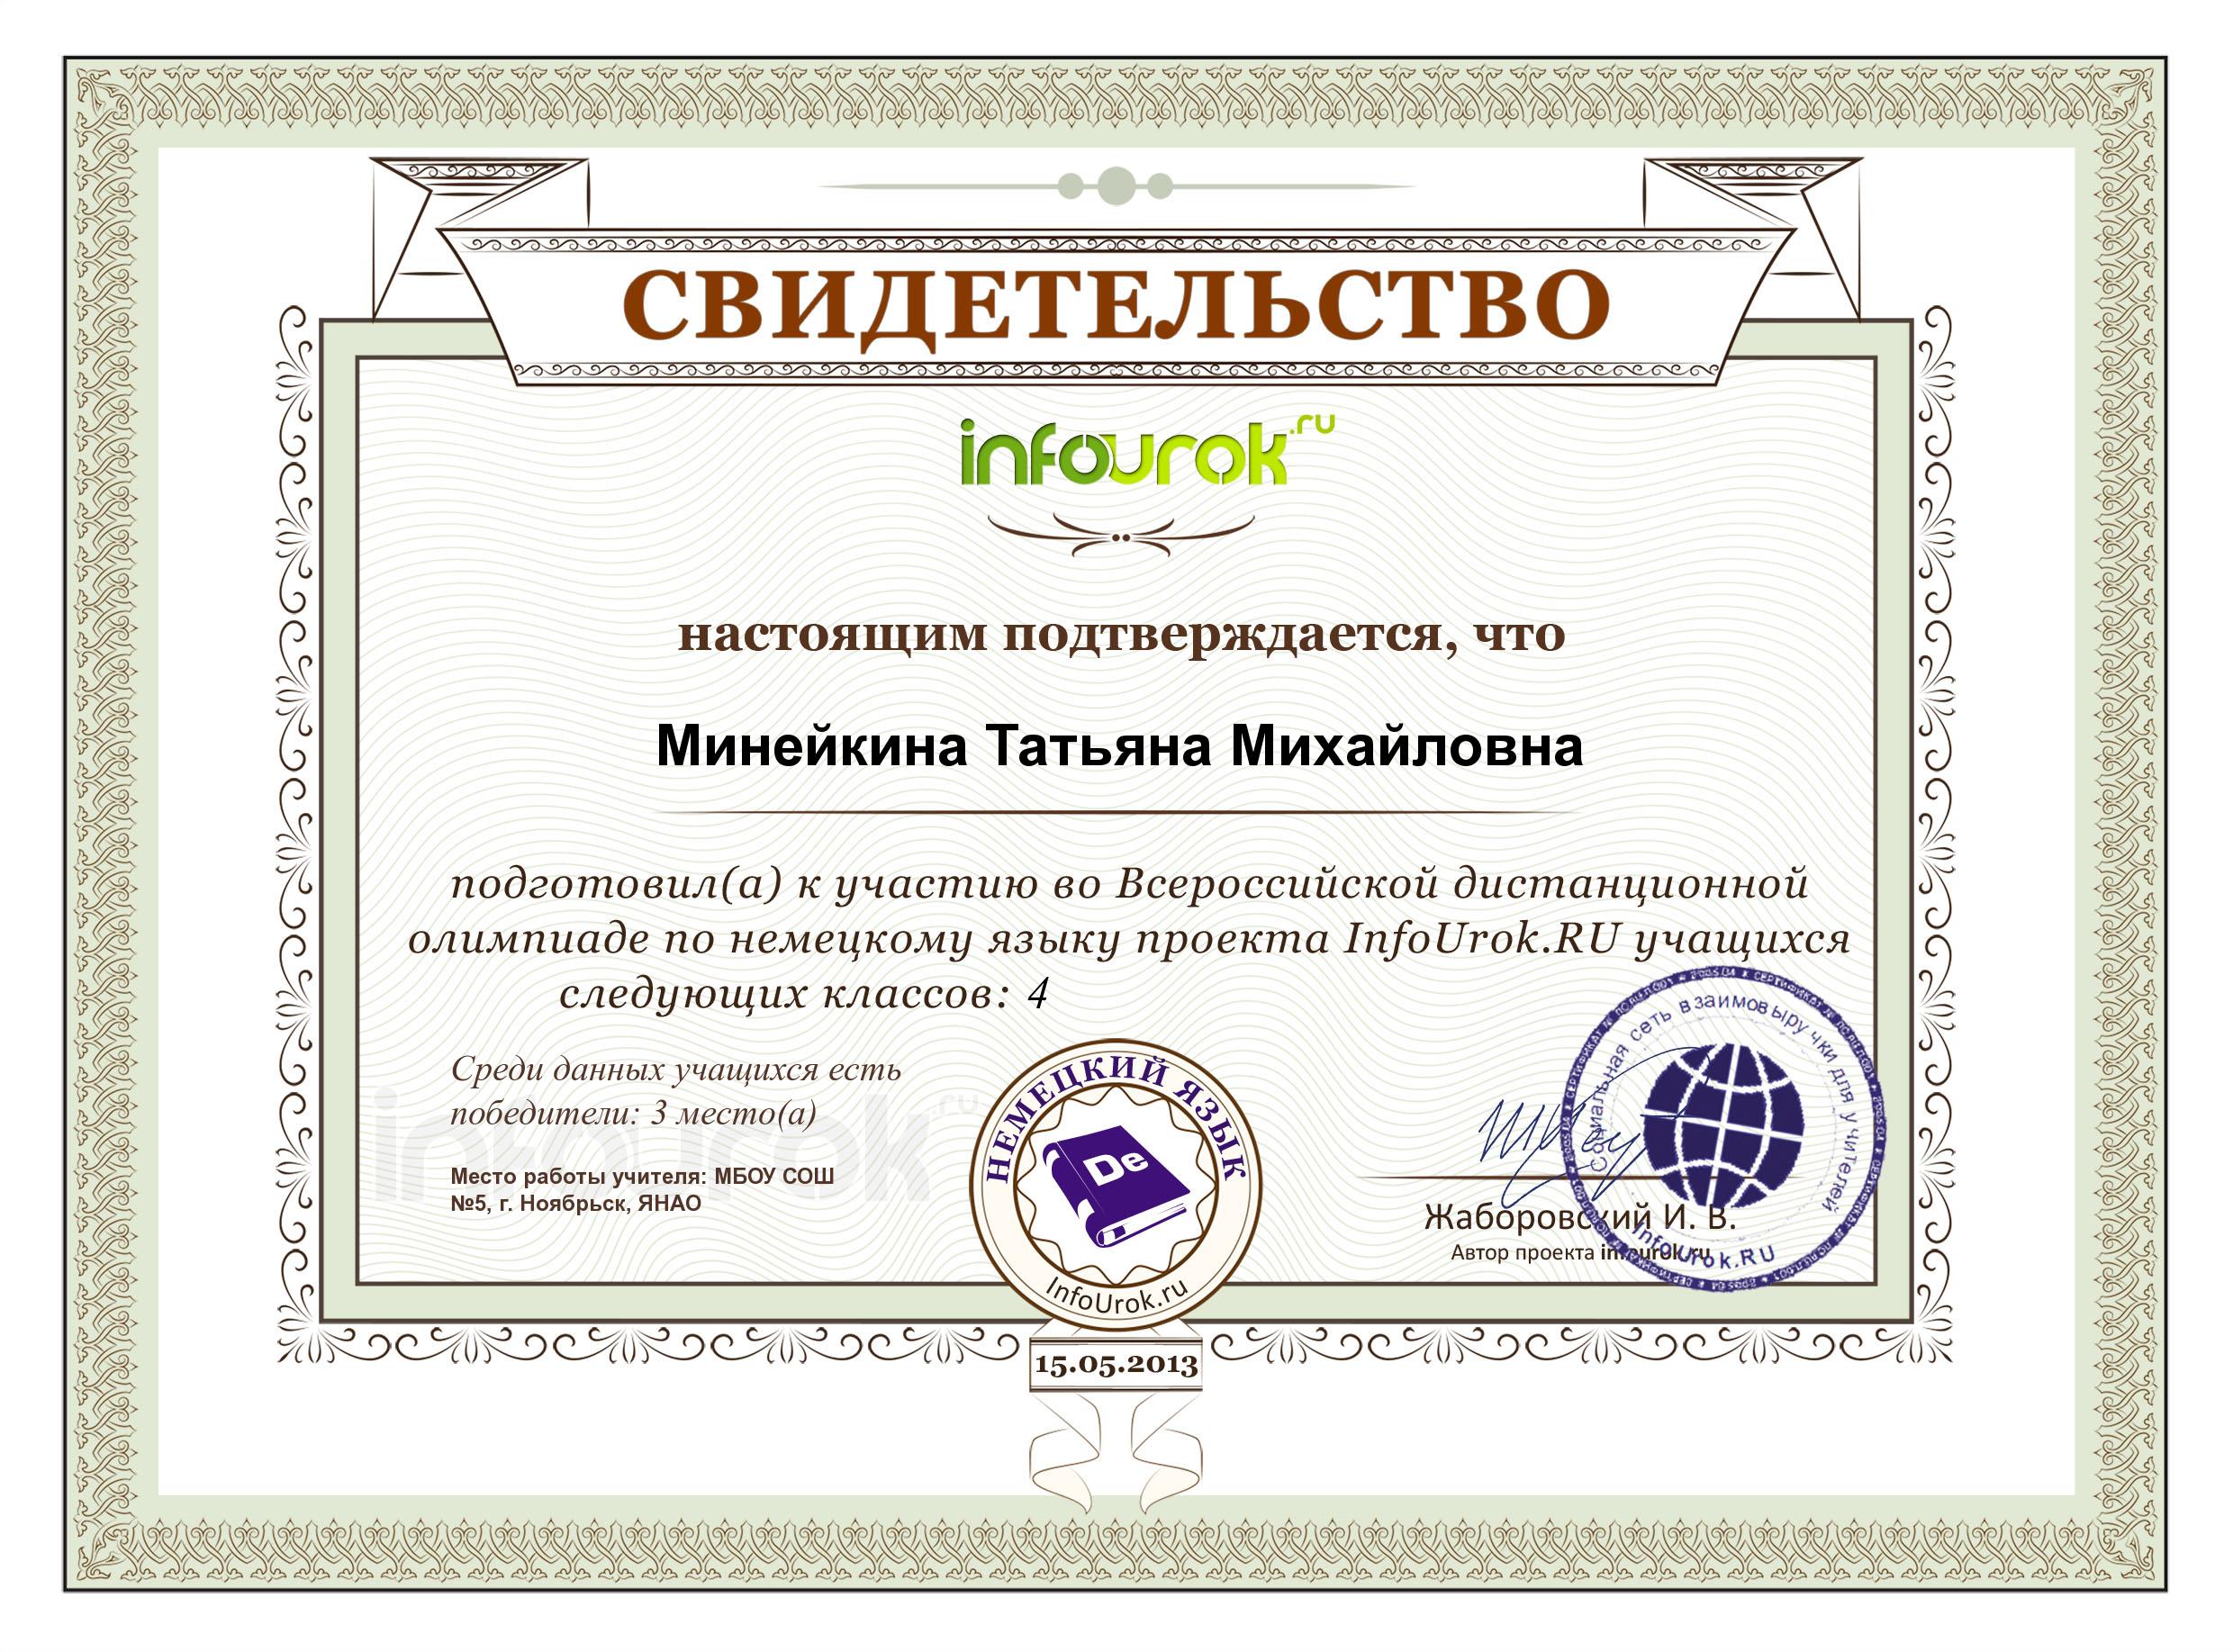 Infourok ru тесты. Грамота сертификат. Сертификаты для учителей начальных классов. Сертификат Инфоурок. Дипломы сертификаты грамоты.